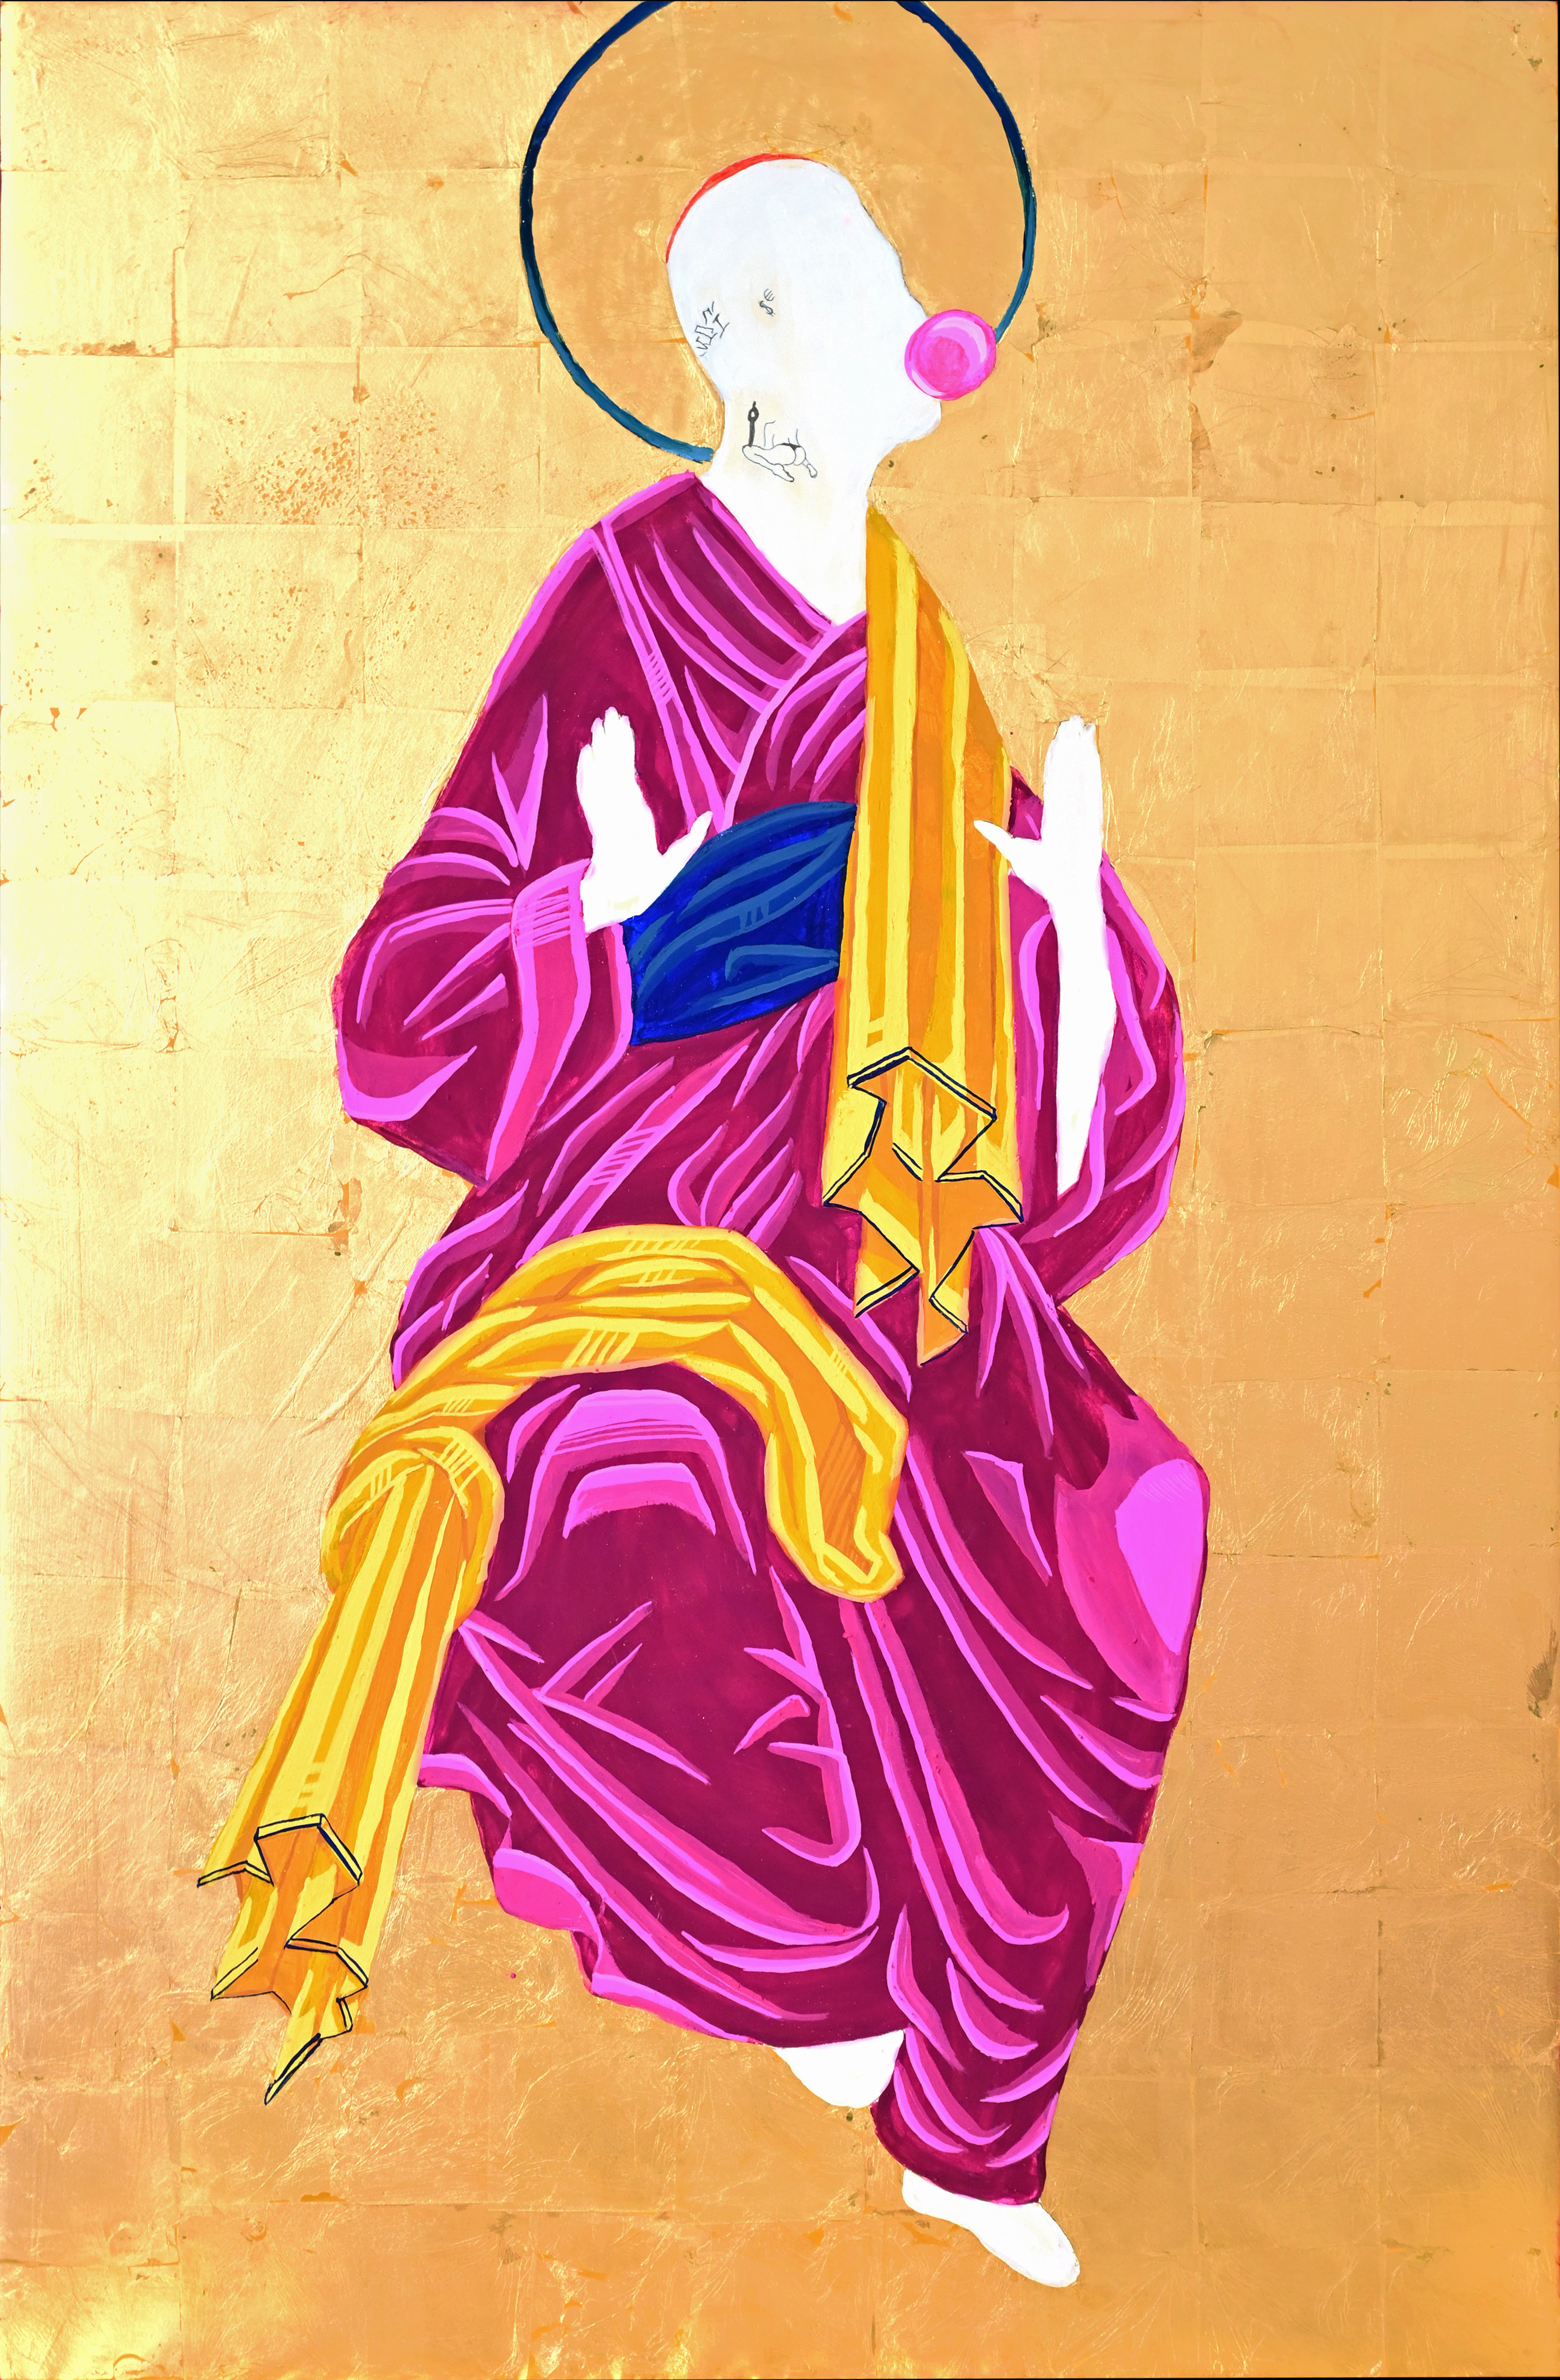 Sfera ebbasta, 59 x 90 cm, icona a tempera all'uovo su tavola e foglia oro, courtesy by Traffic Gallery